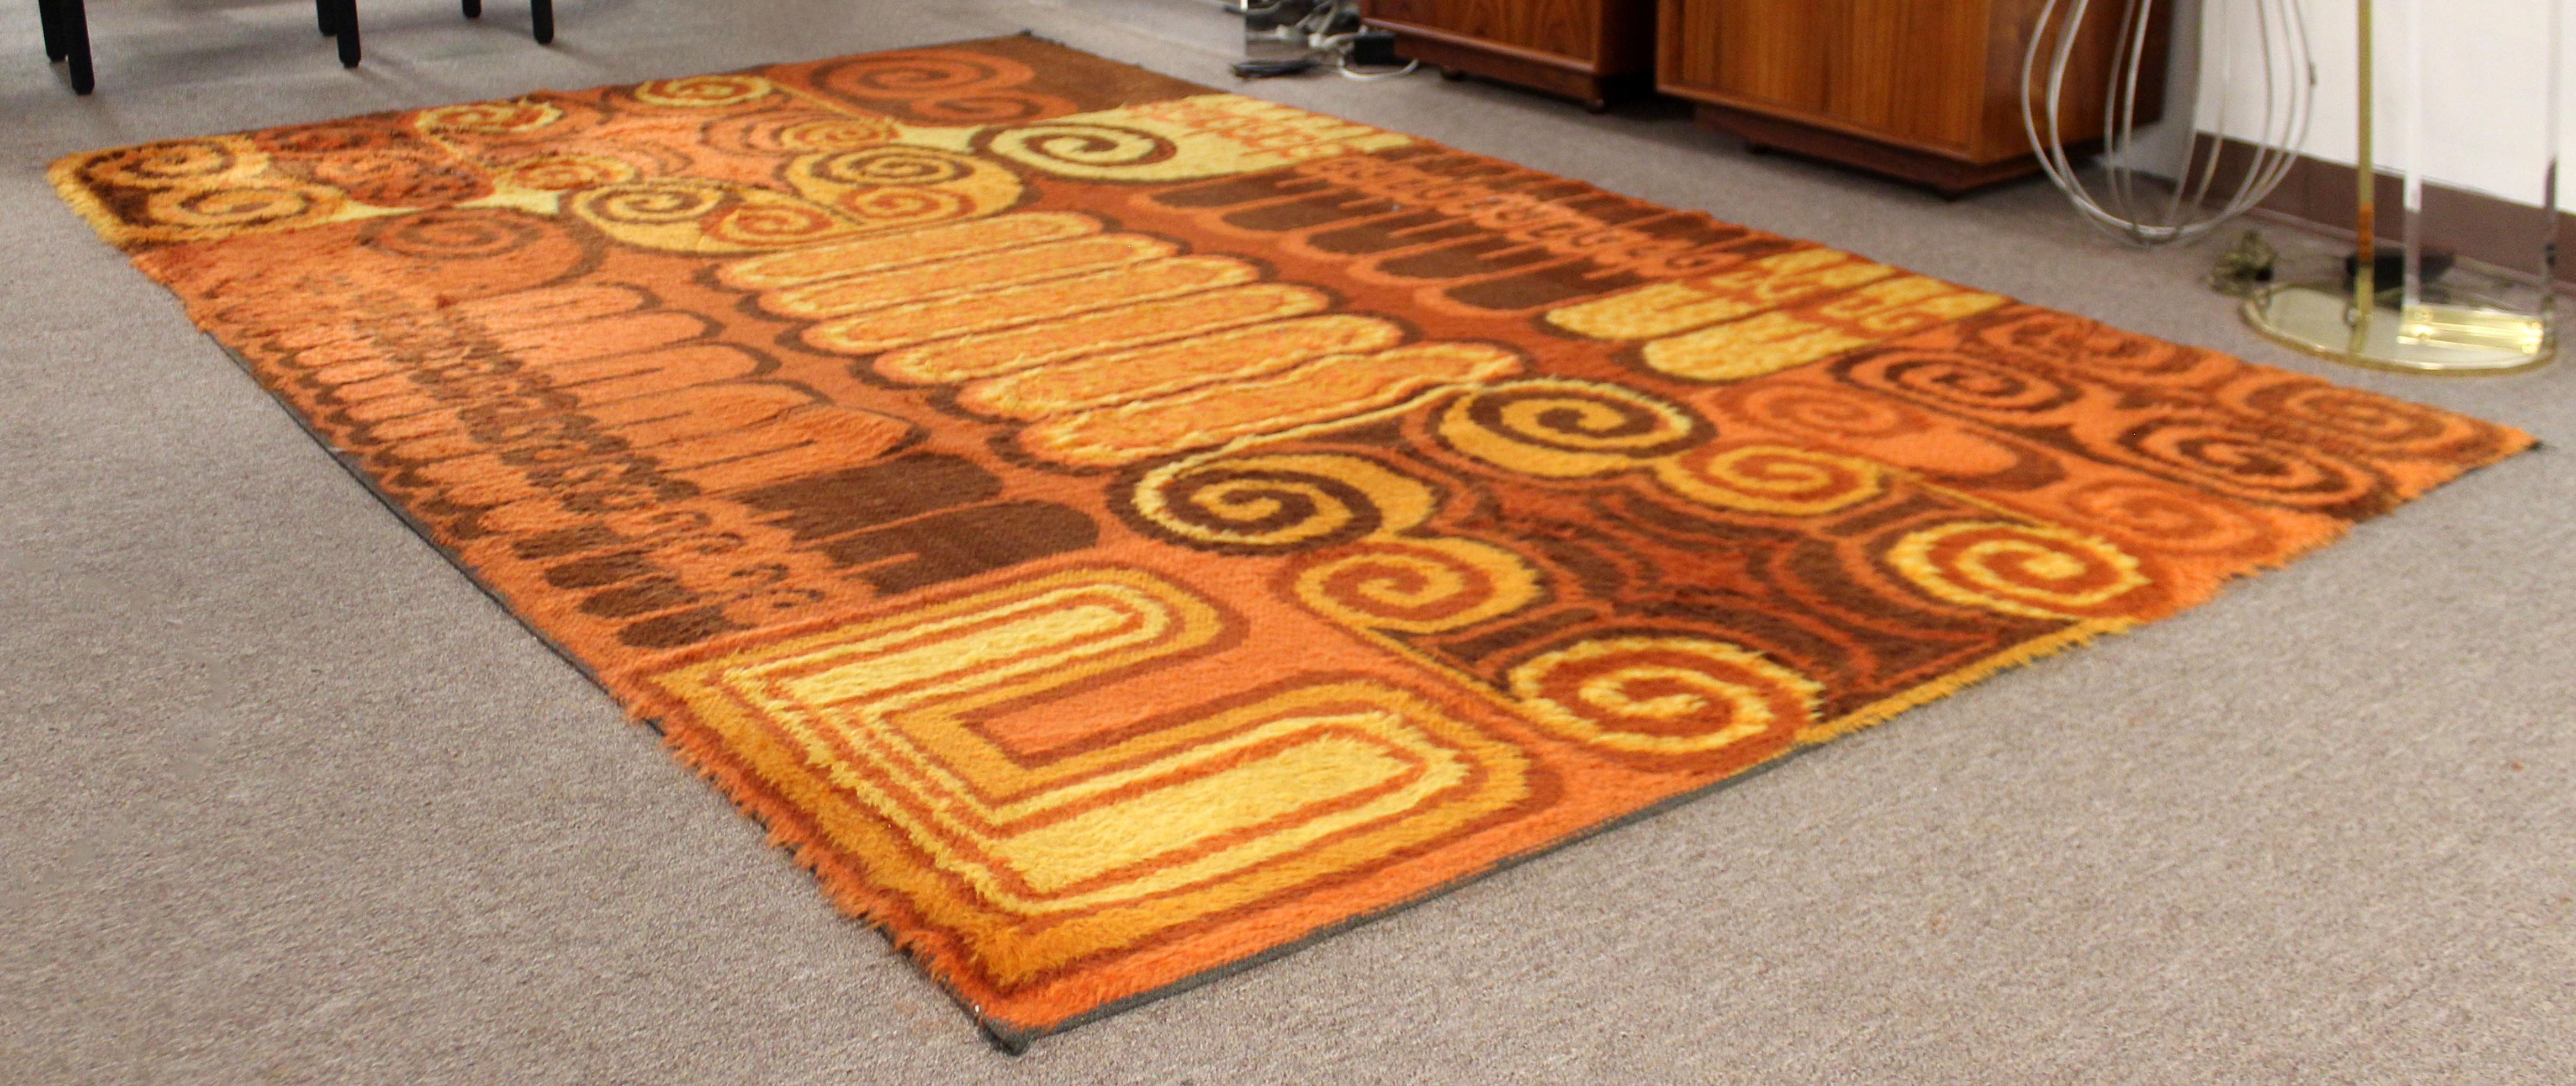 large orange rug